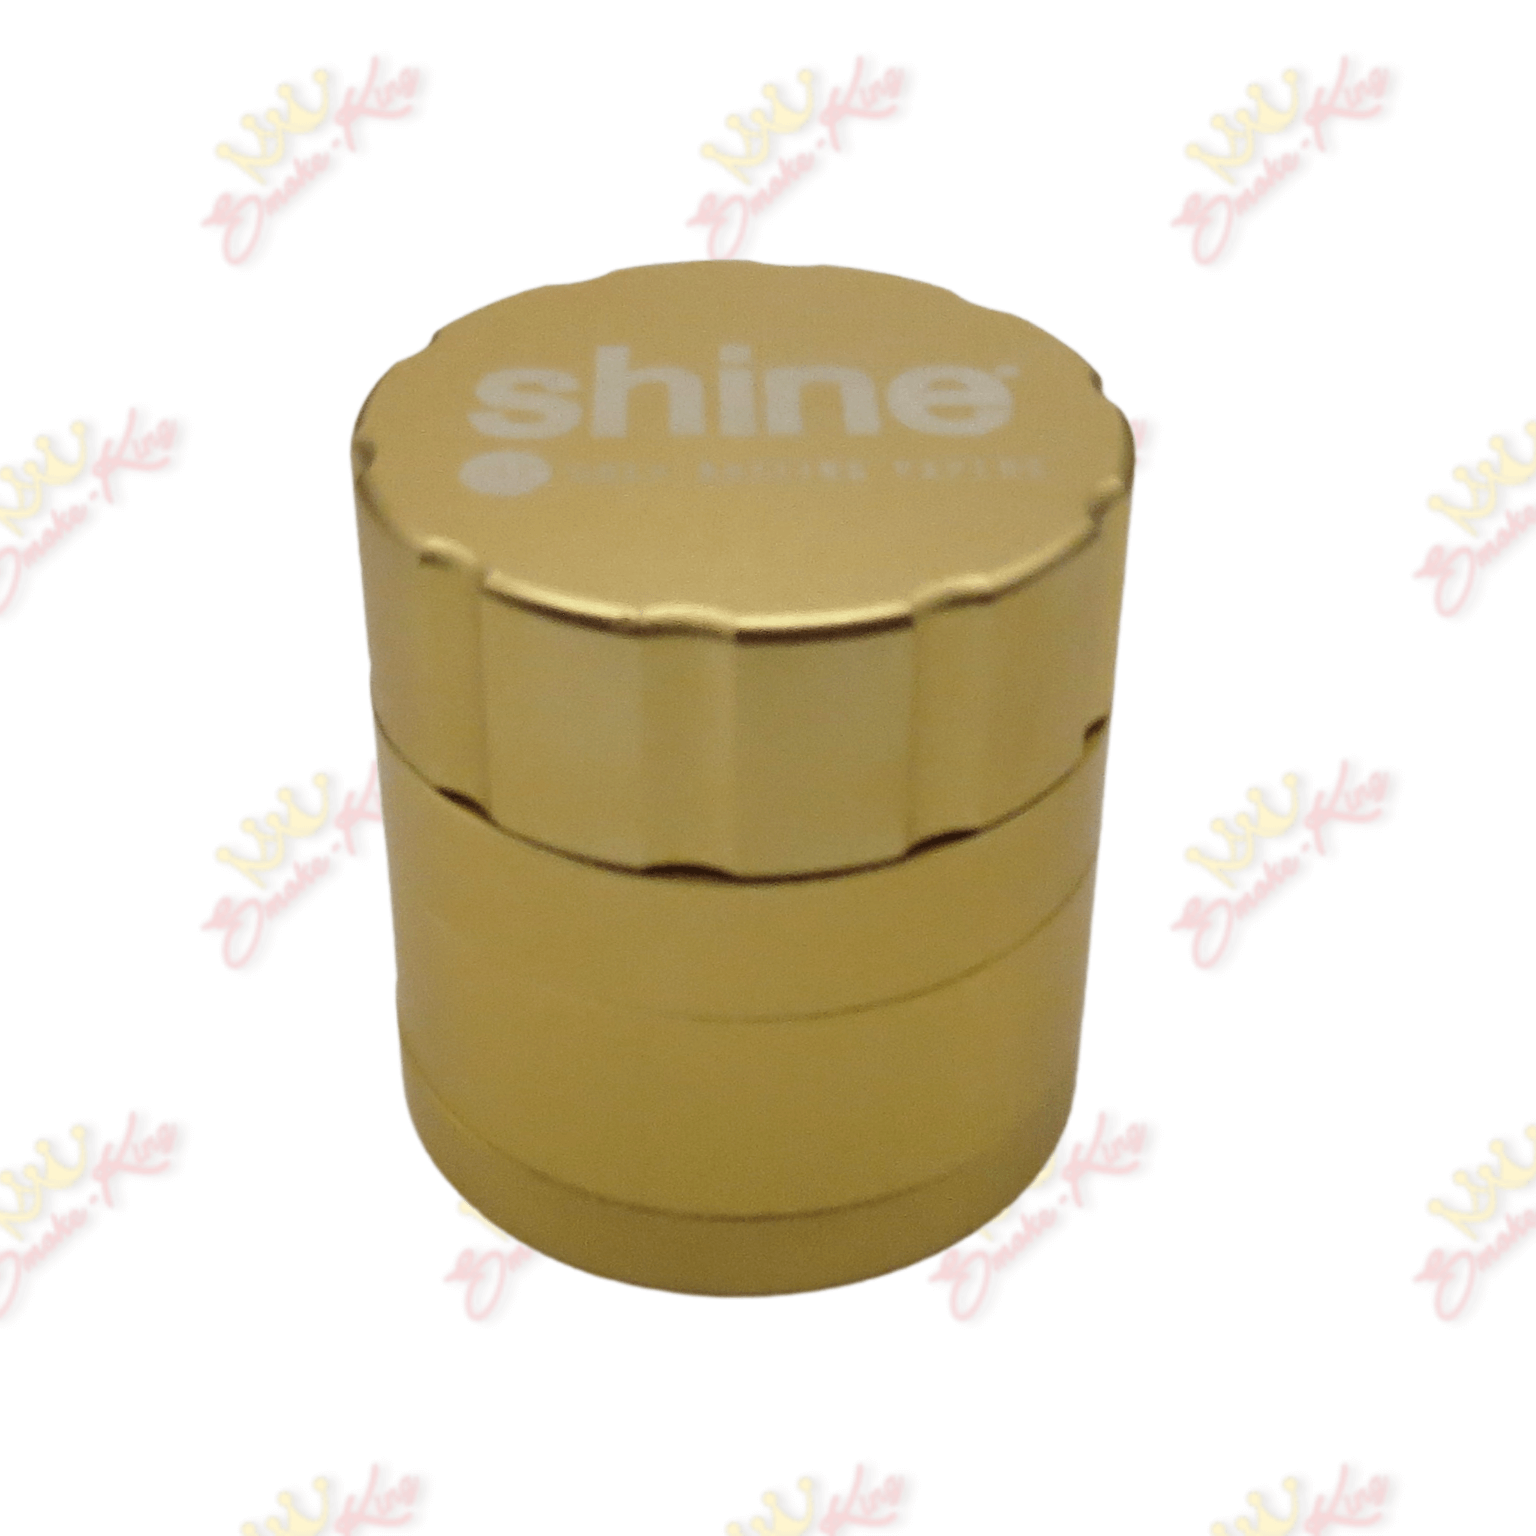 Shine Shine Gold Grinder Shine Gold Grinder | Grinders | Smoke-King